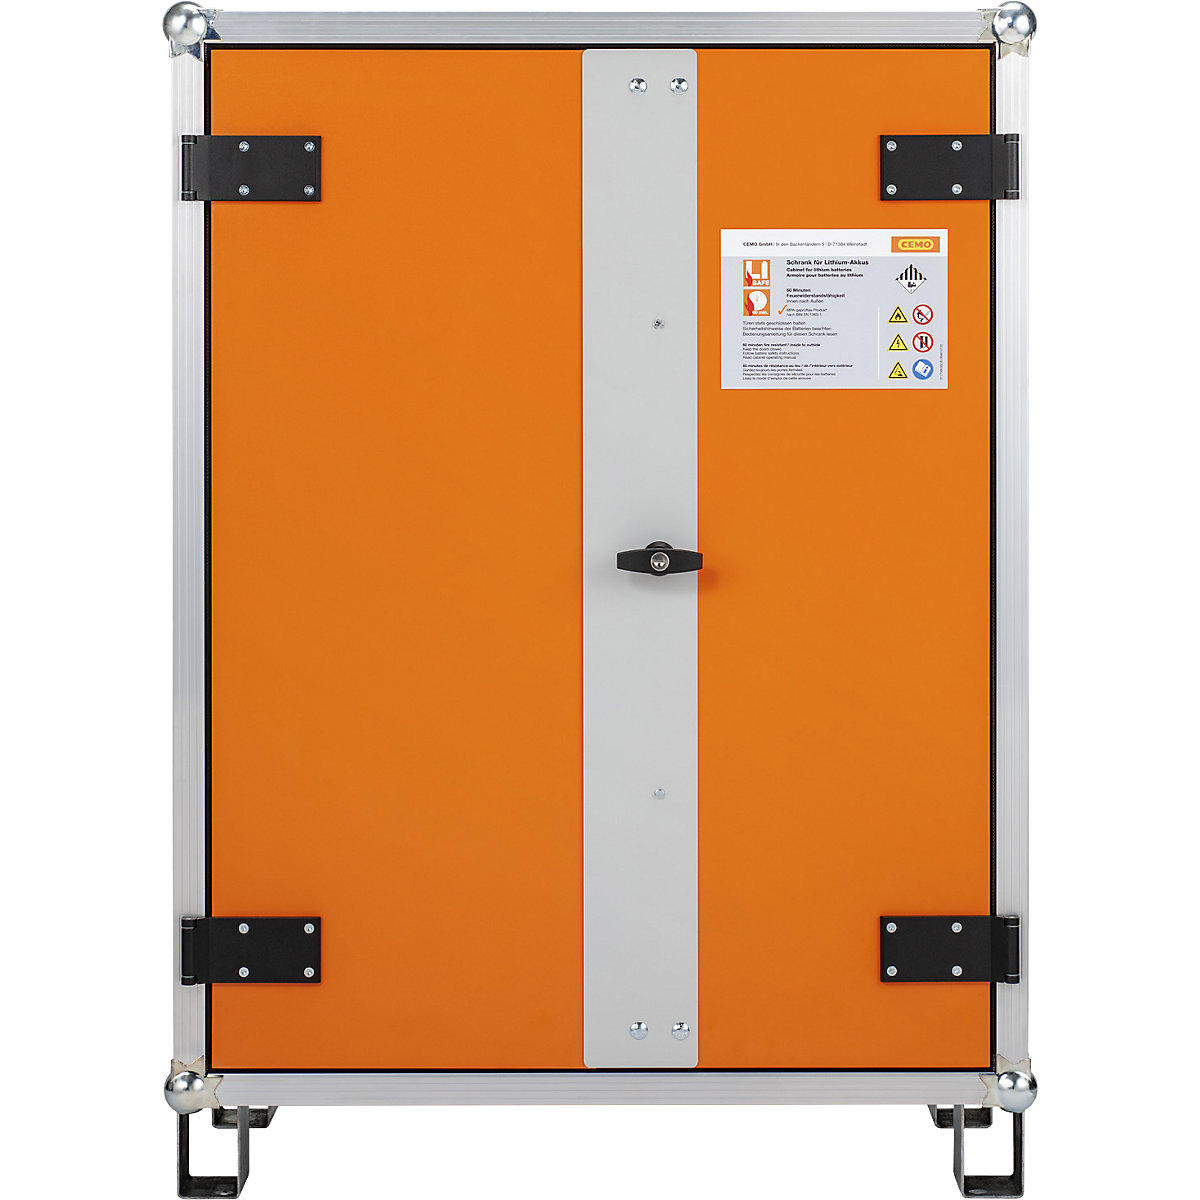 Veilige acculaadkast voor brandmeldinstallaties – CEMO, b x d x h = 830 x 660 x 1110 mm, 230 V, oranje/grijs-1